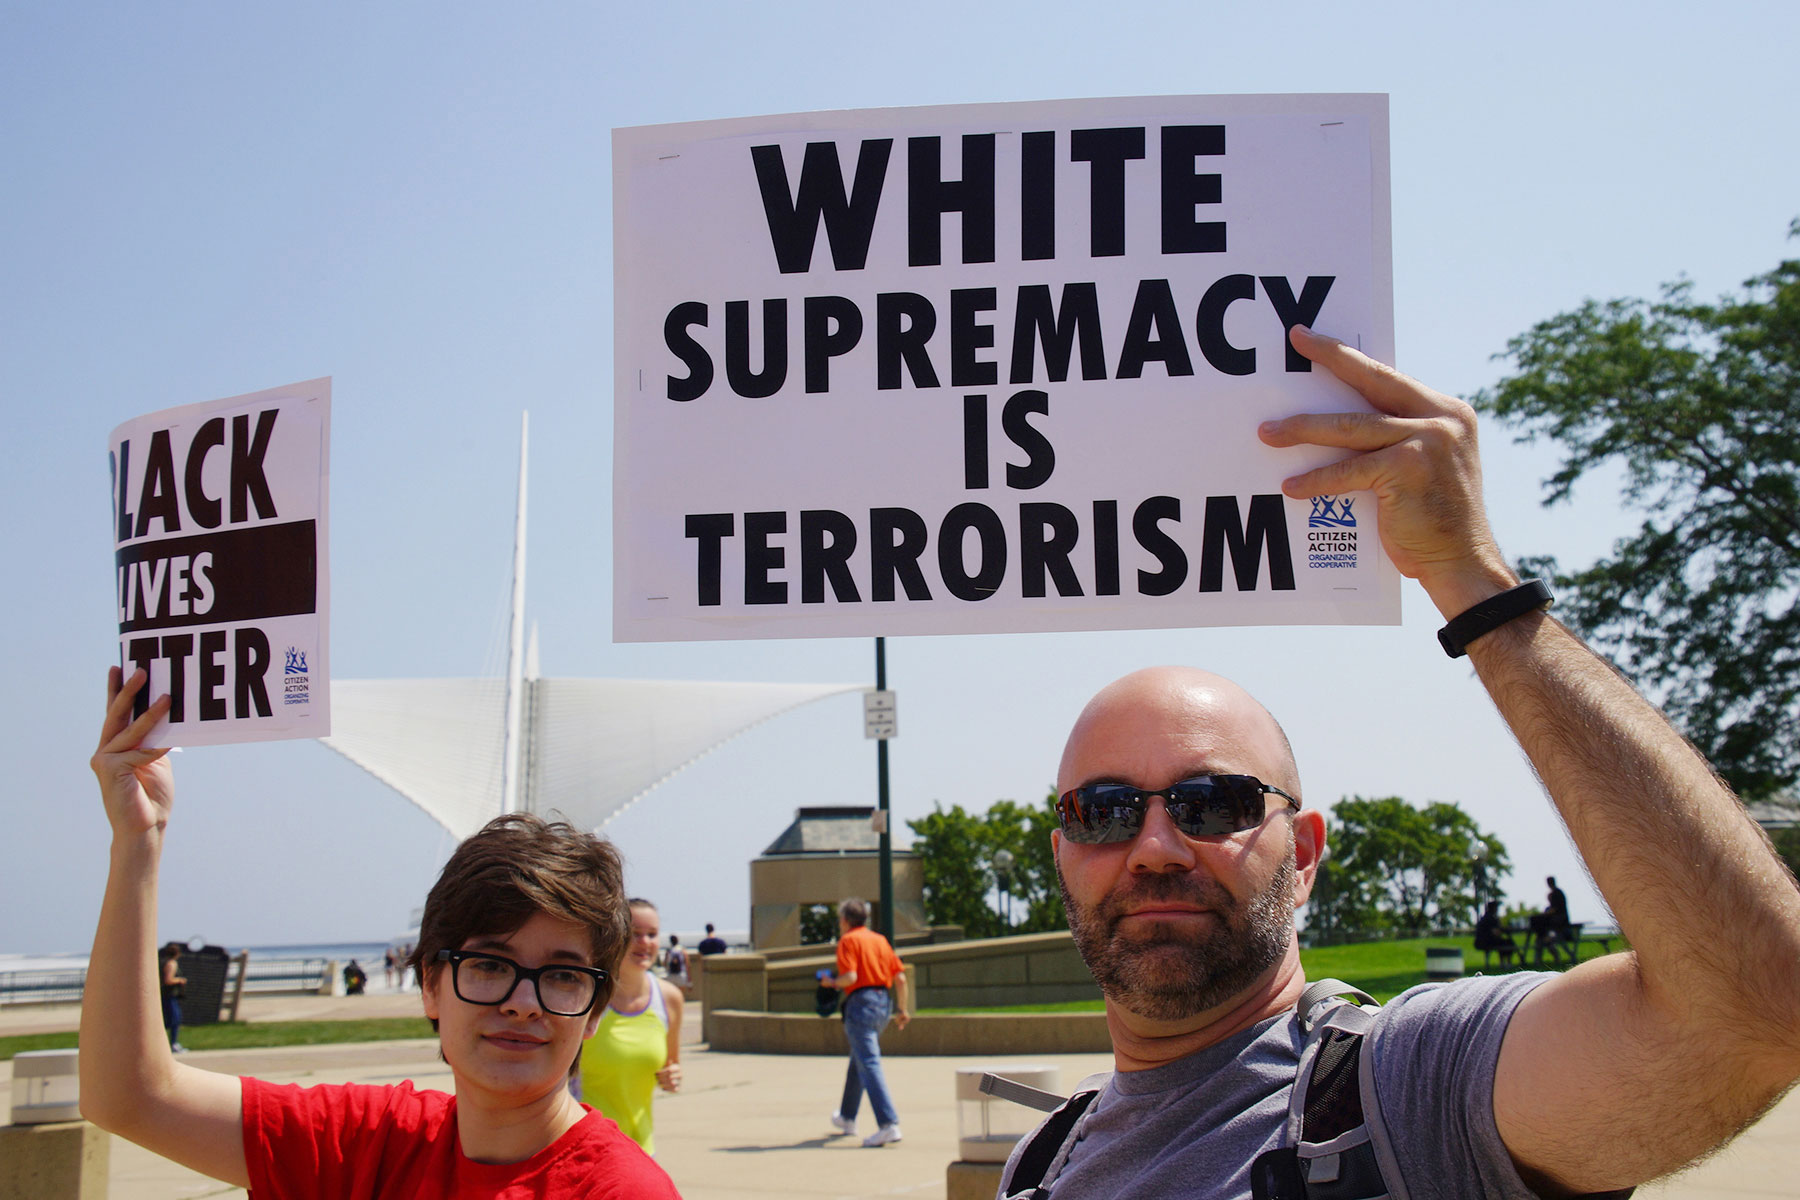 White supremacy